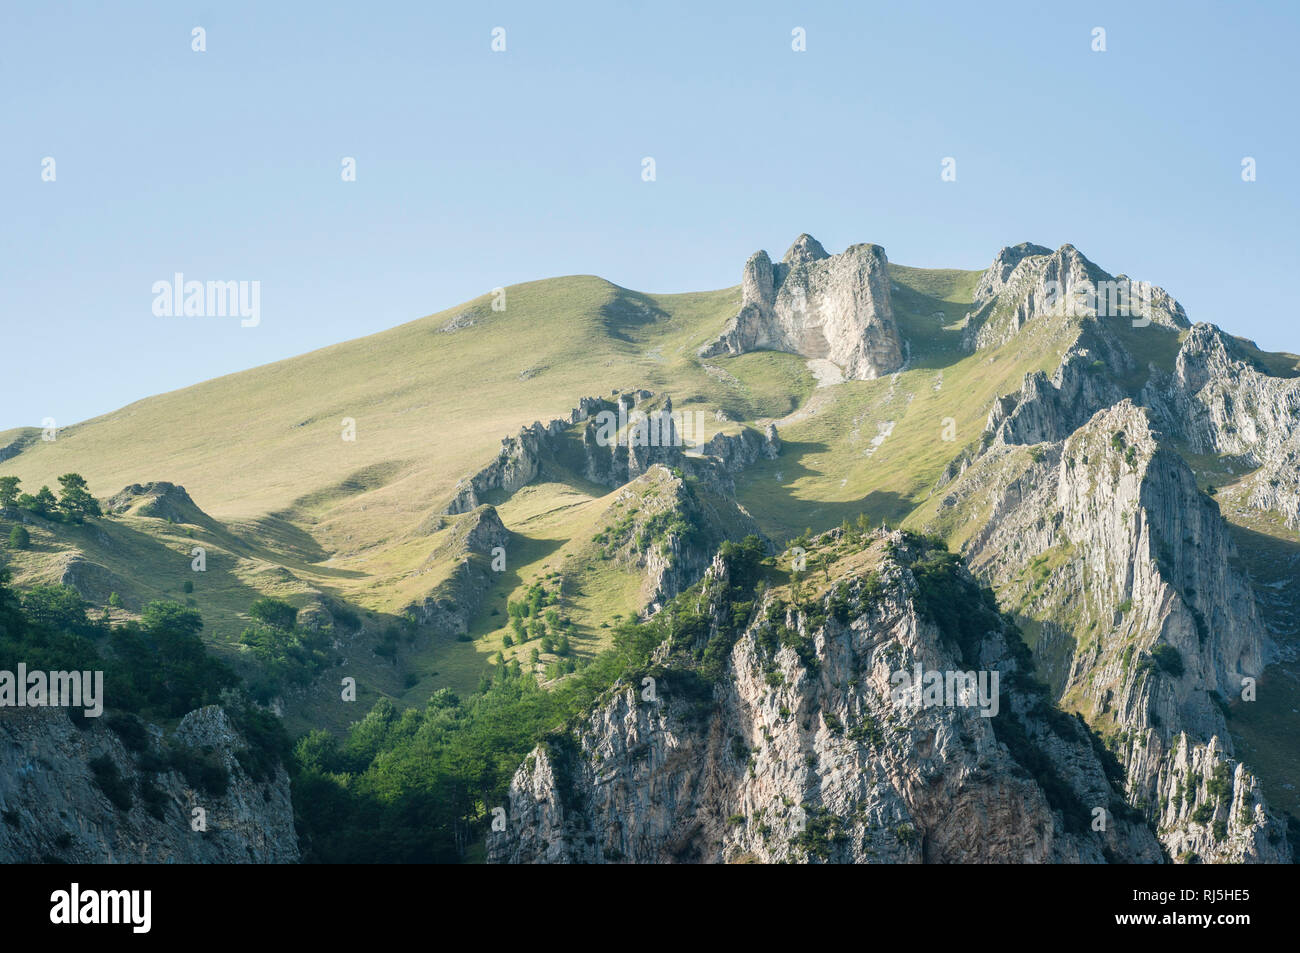 Europa, Italien, Marken, Die Sibillinische Berge nahe der Gola dell'Infernaccio (Teufelsschlucht) Stock Photo